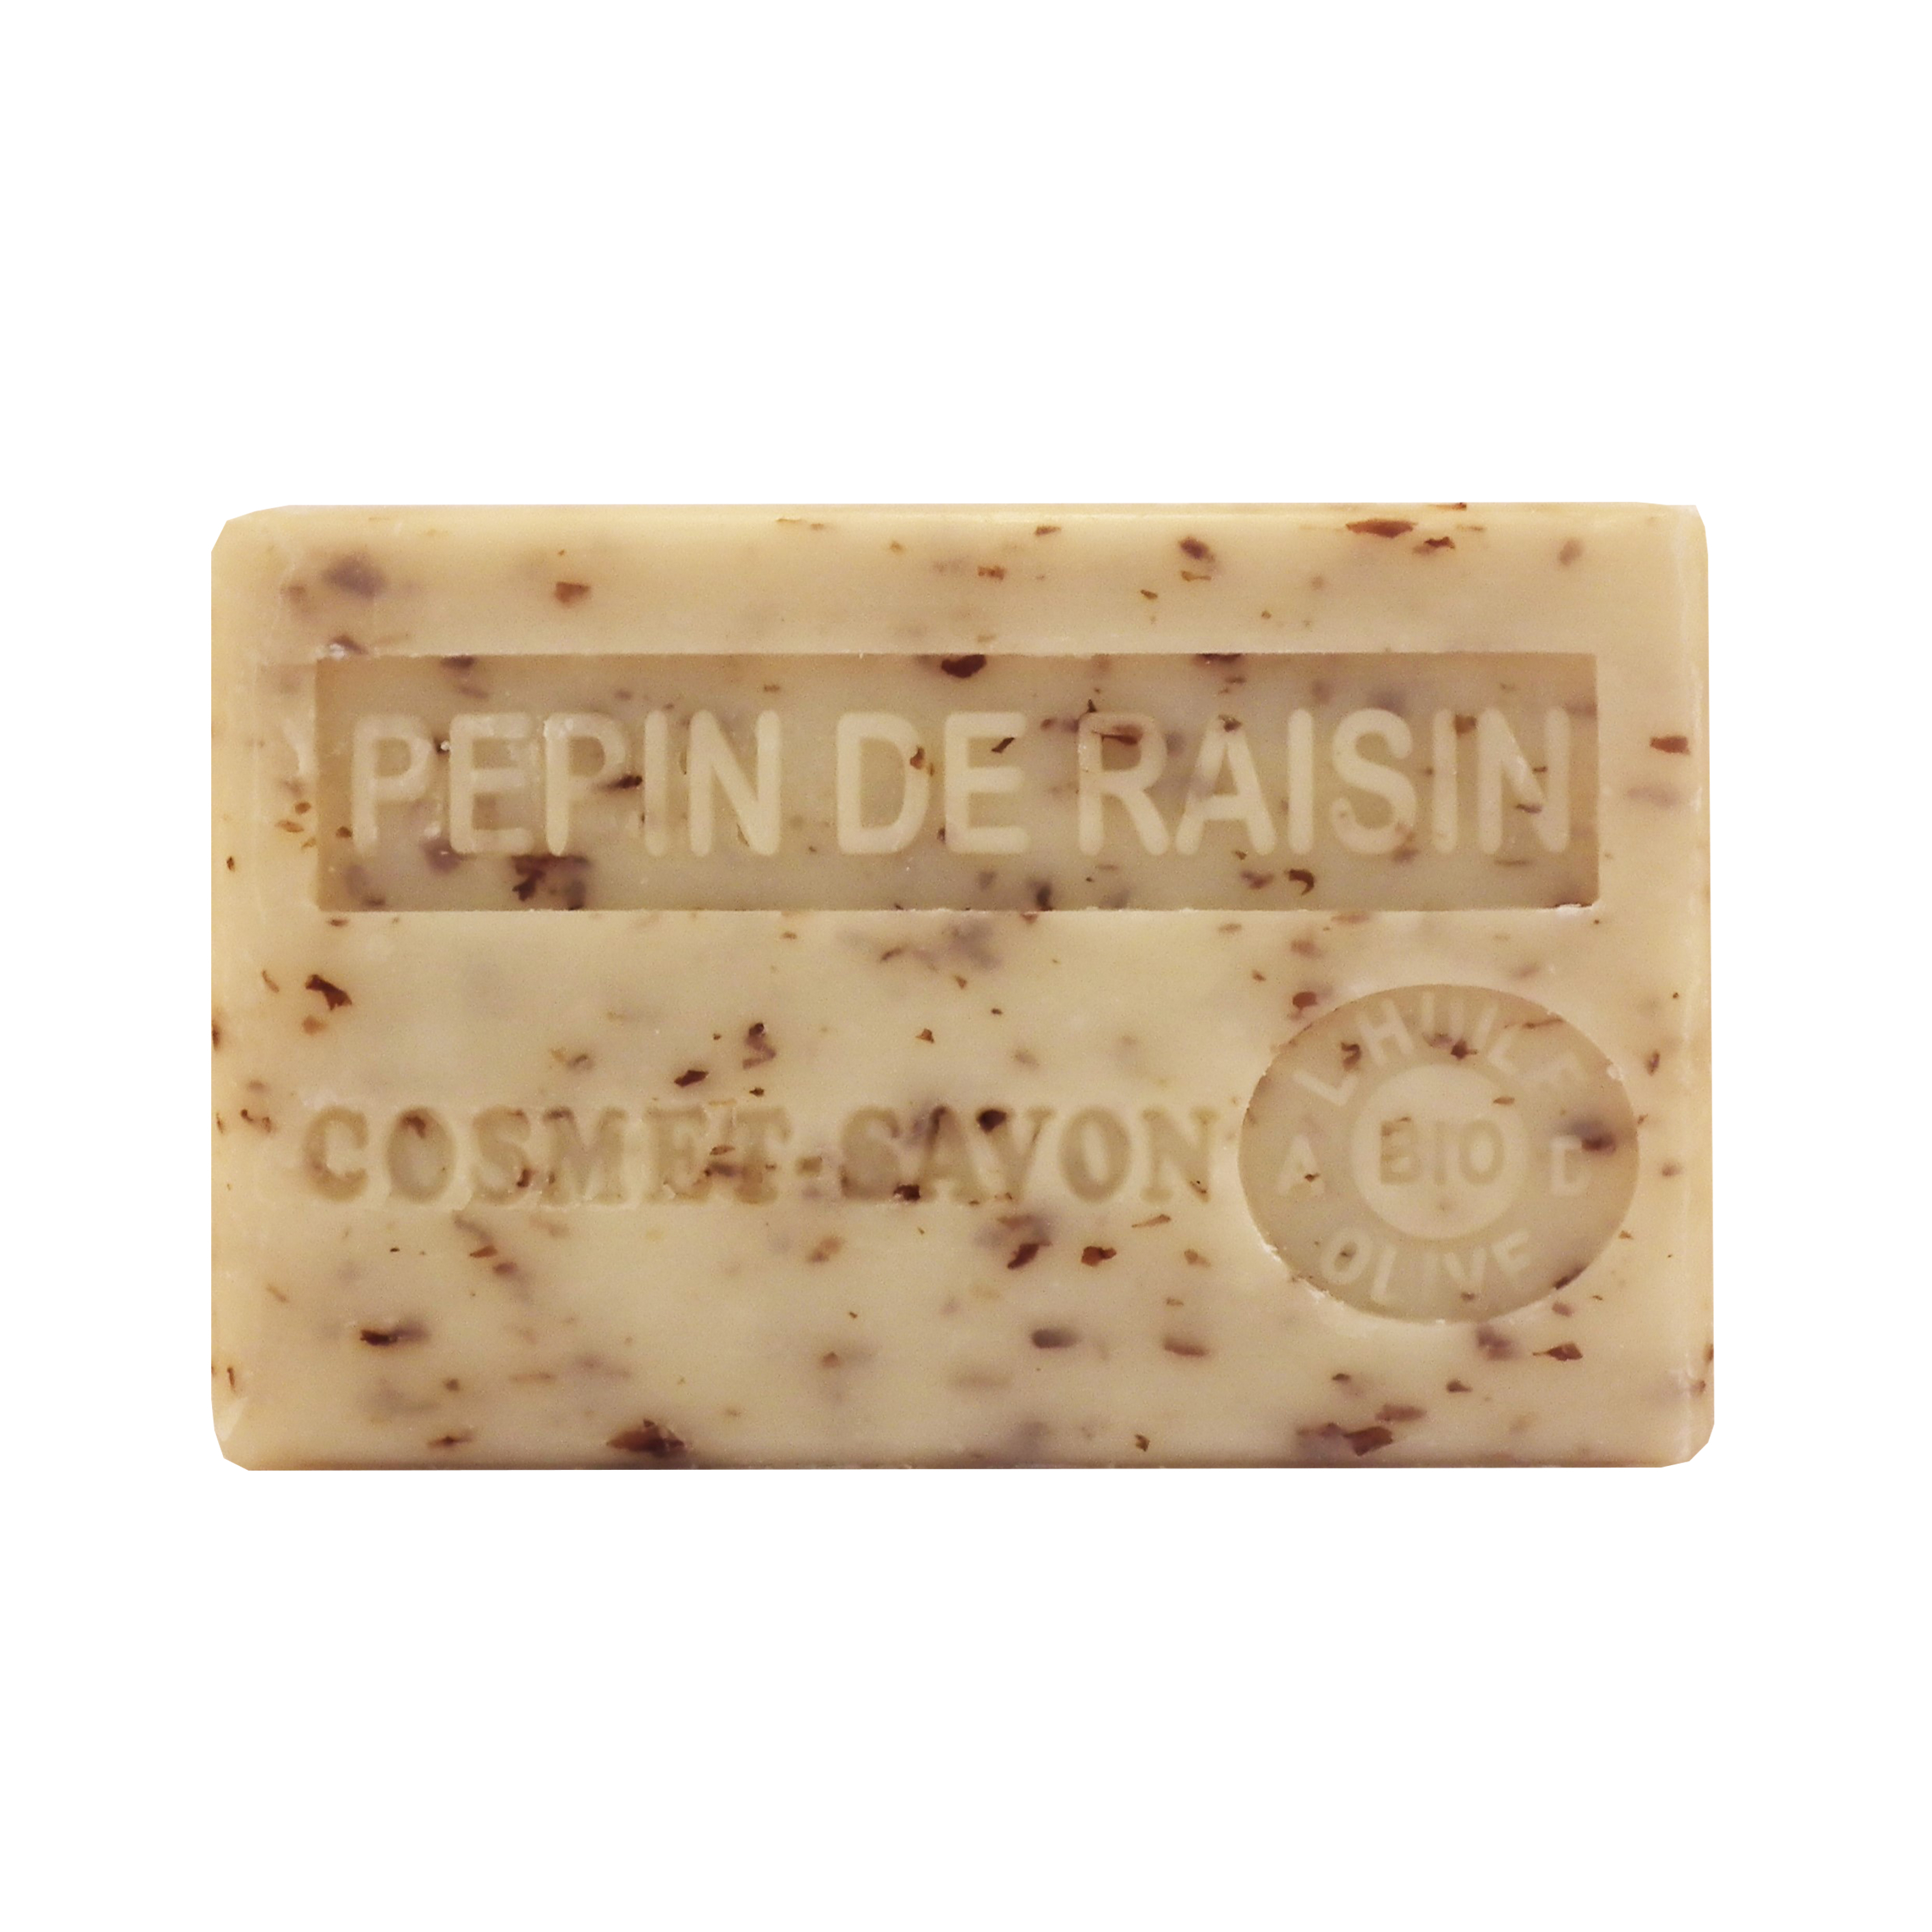 pepin-de-raisin-savon-125gr-au-beurre-de-karite-bio-cosmet-savon-36652050066766-face-JPEG